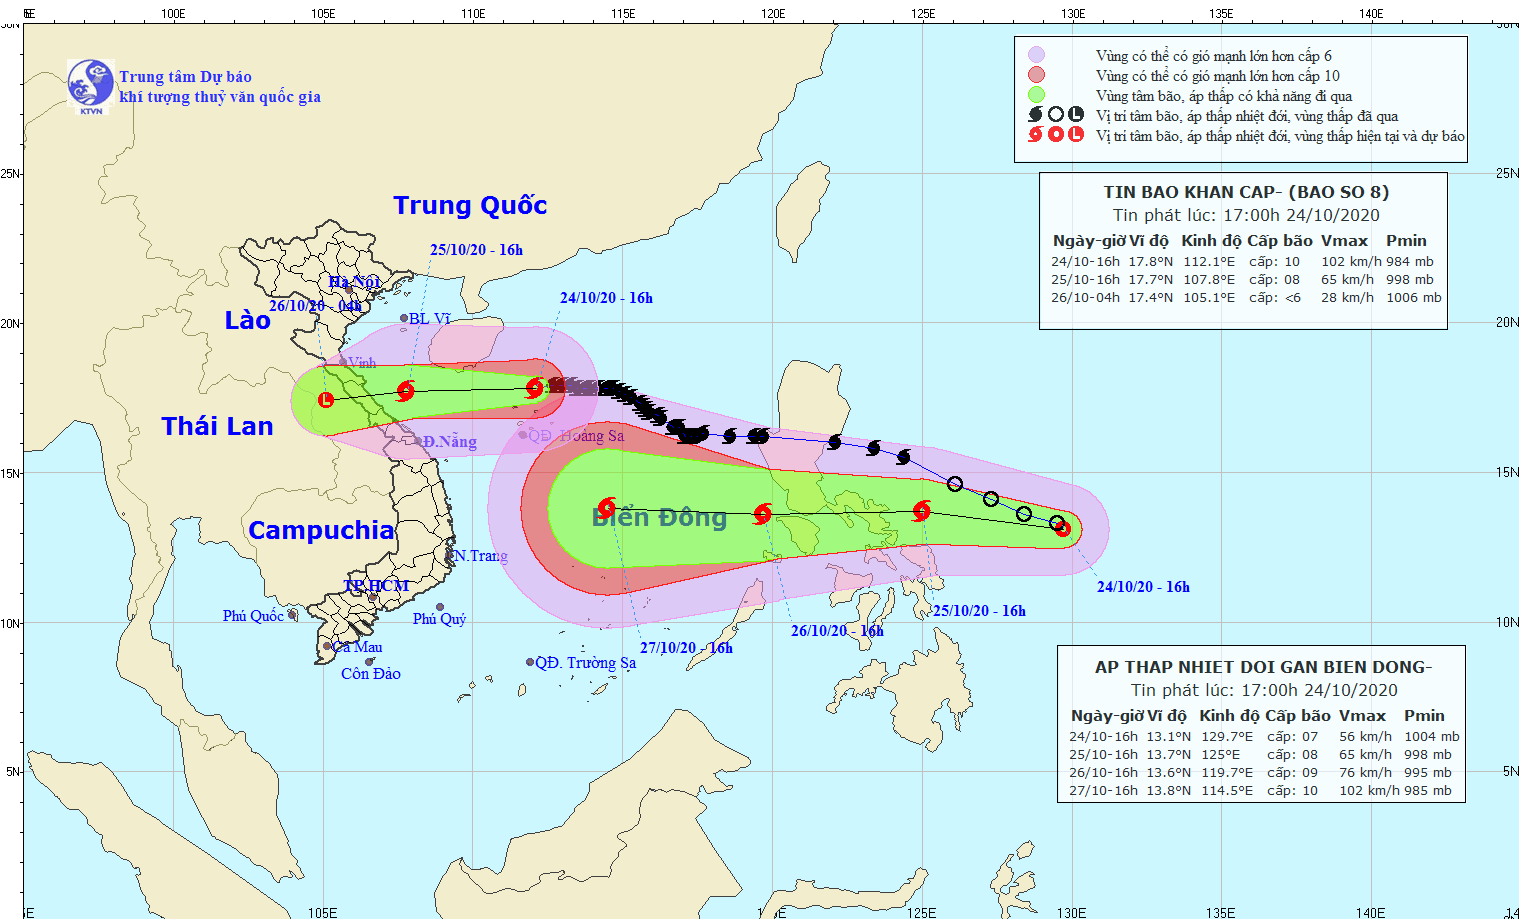 Bão số 8 sẽ đi vào đất liền từ Hà Tĩnh đến Quảng Trị, áp thấp nhiệt đới khả năng thành bão